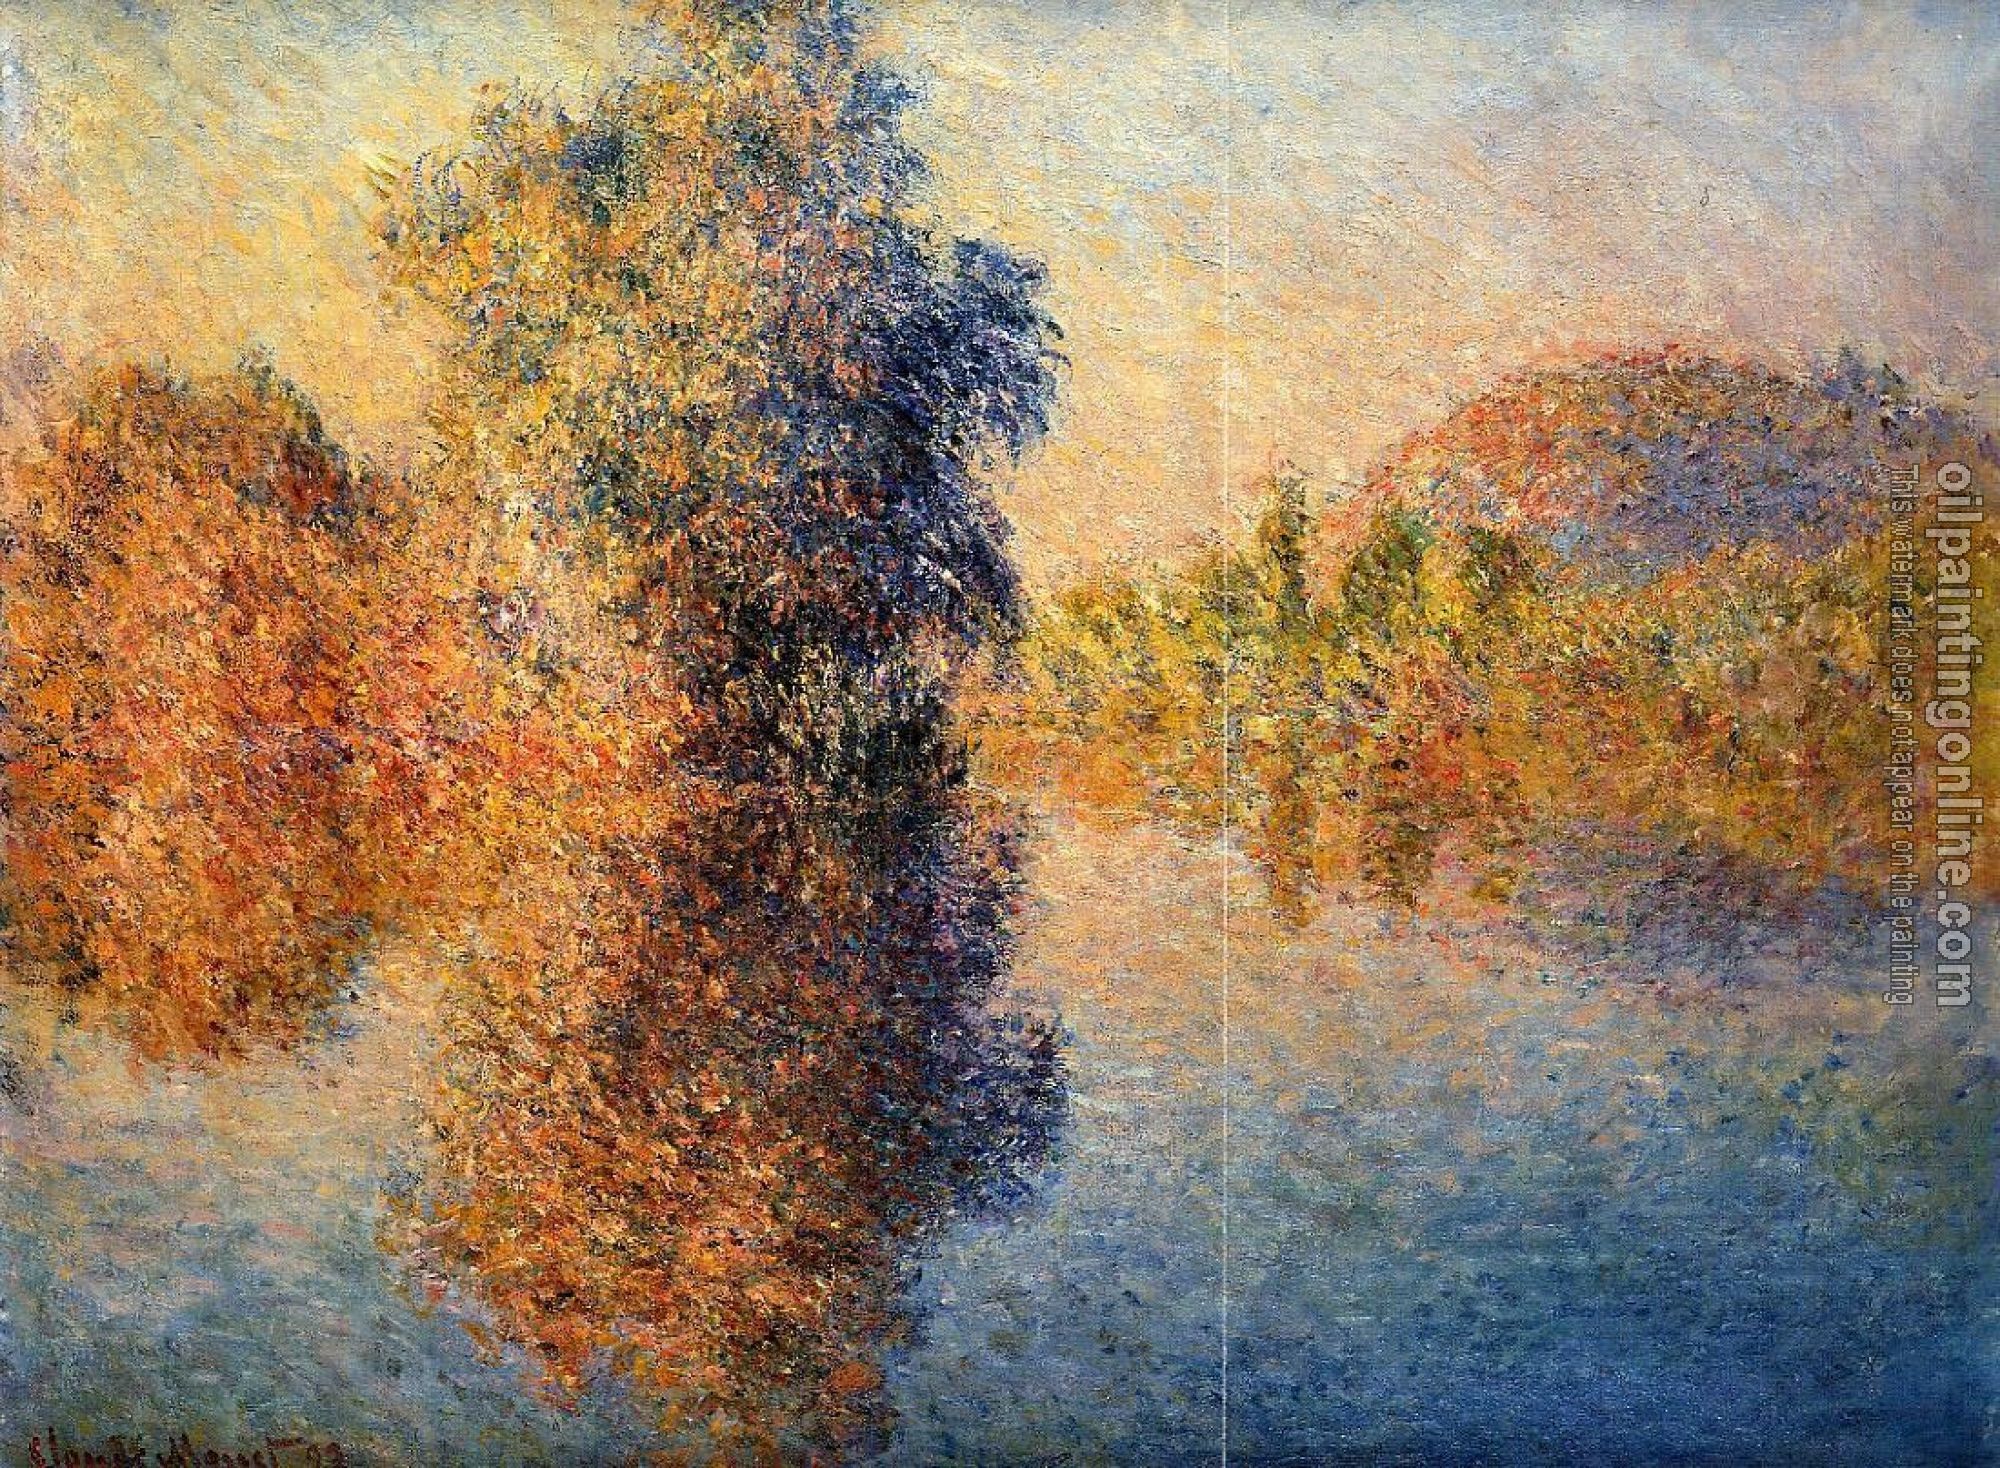 Monet, Claude Oscar - Morning on the Seine